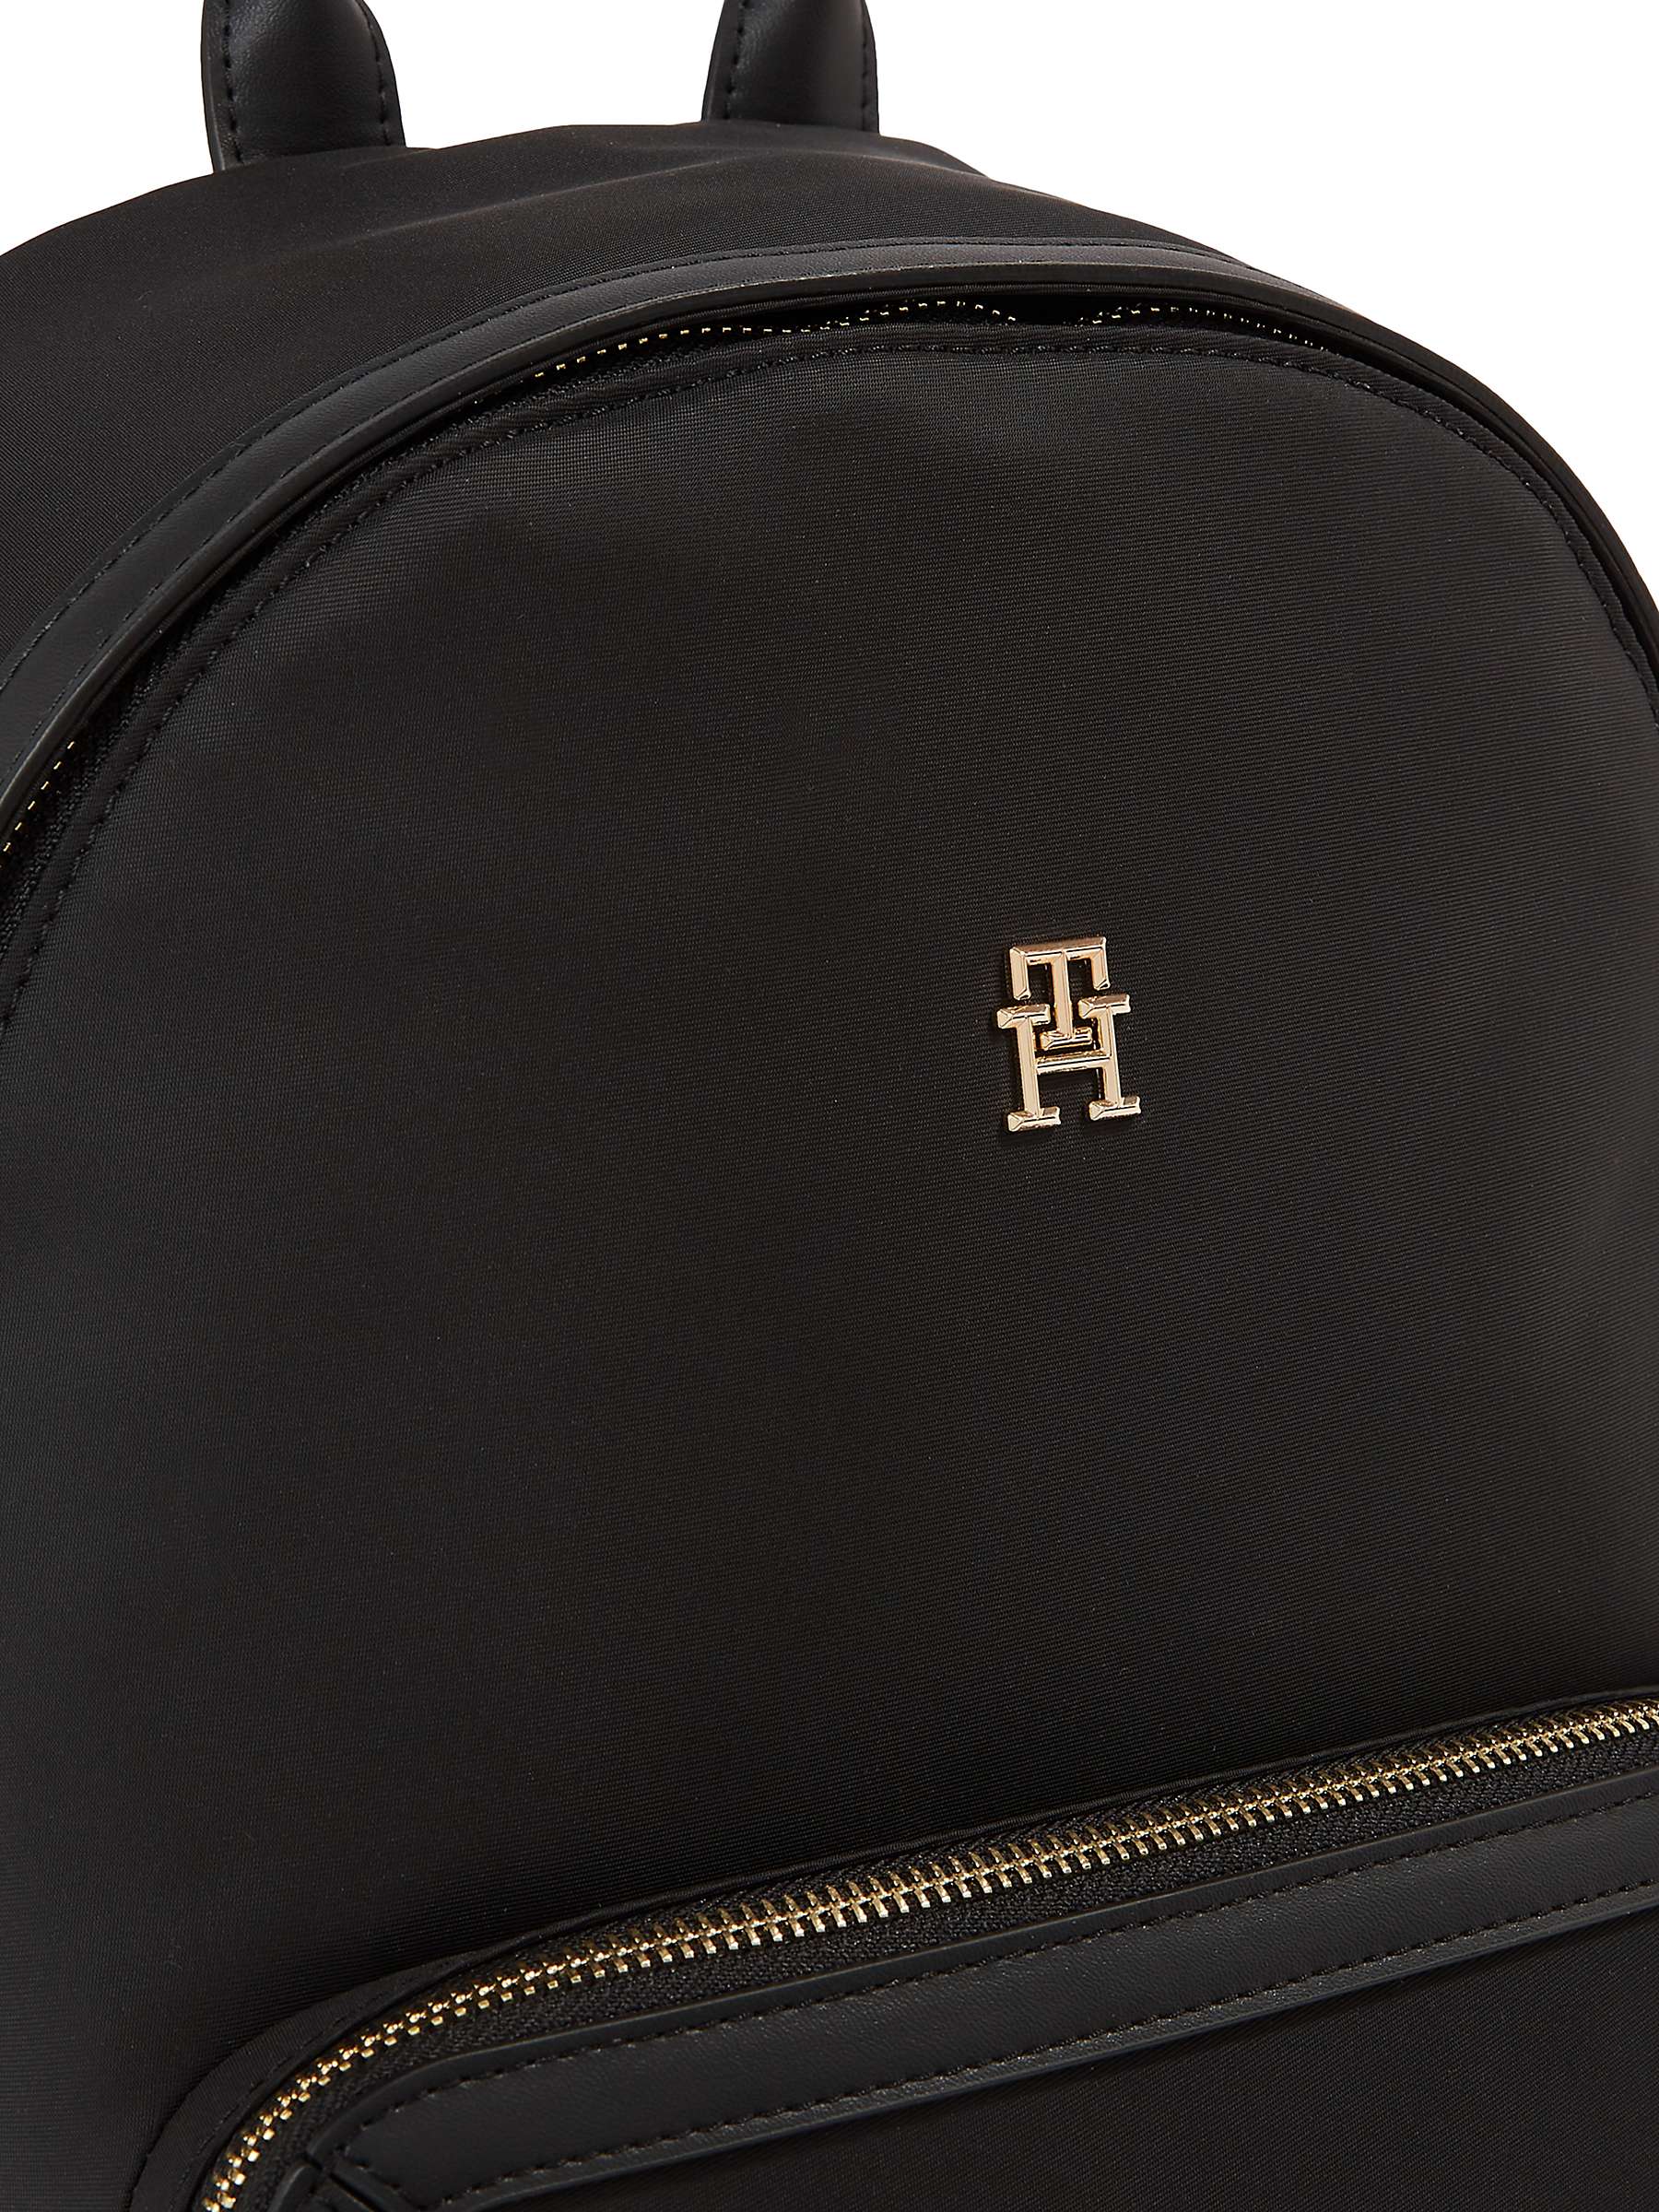 Buy Tommy Hilfiger Essential Backpack, Black Online at johnlewis.com